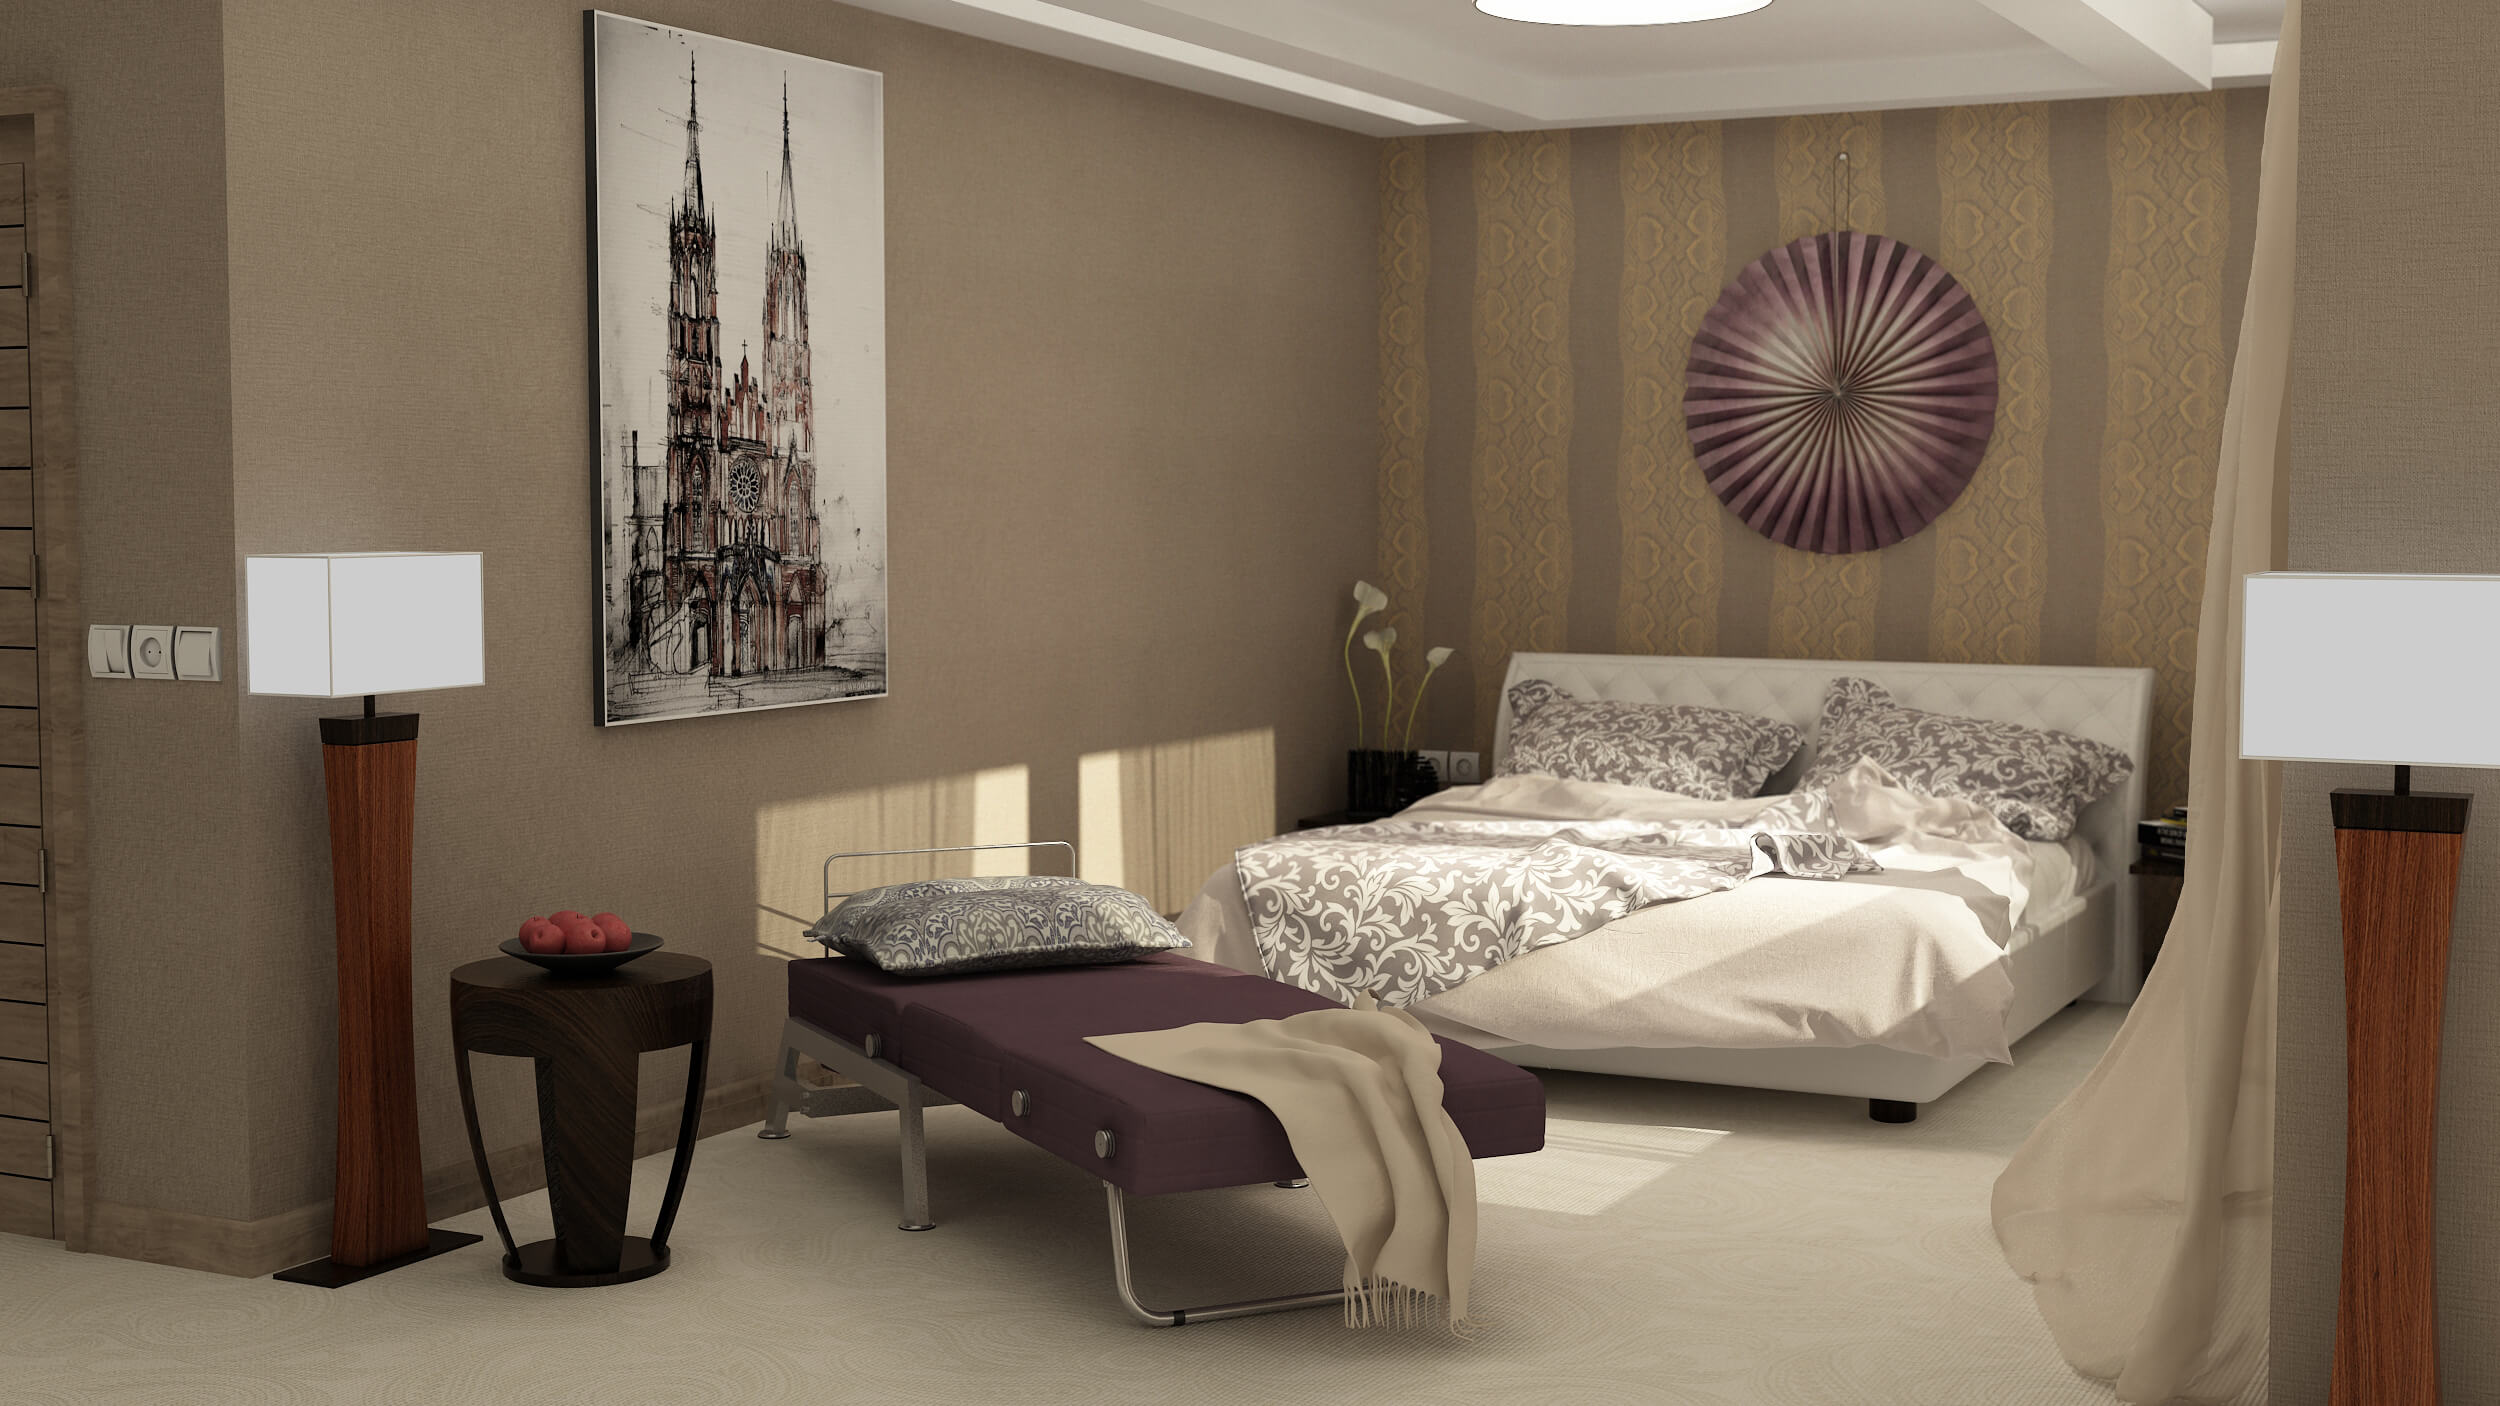 اتاق خوابی که دارای تخت خواب یک نفره و دو نفره میباشد و دیوار ها پوشیده شده است از کاغذ دیواری و تابلو نقاشی نیز به دیوار متصل شده است